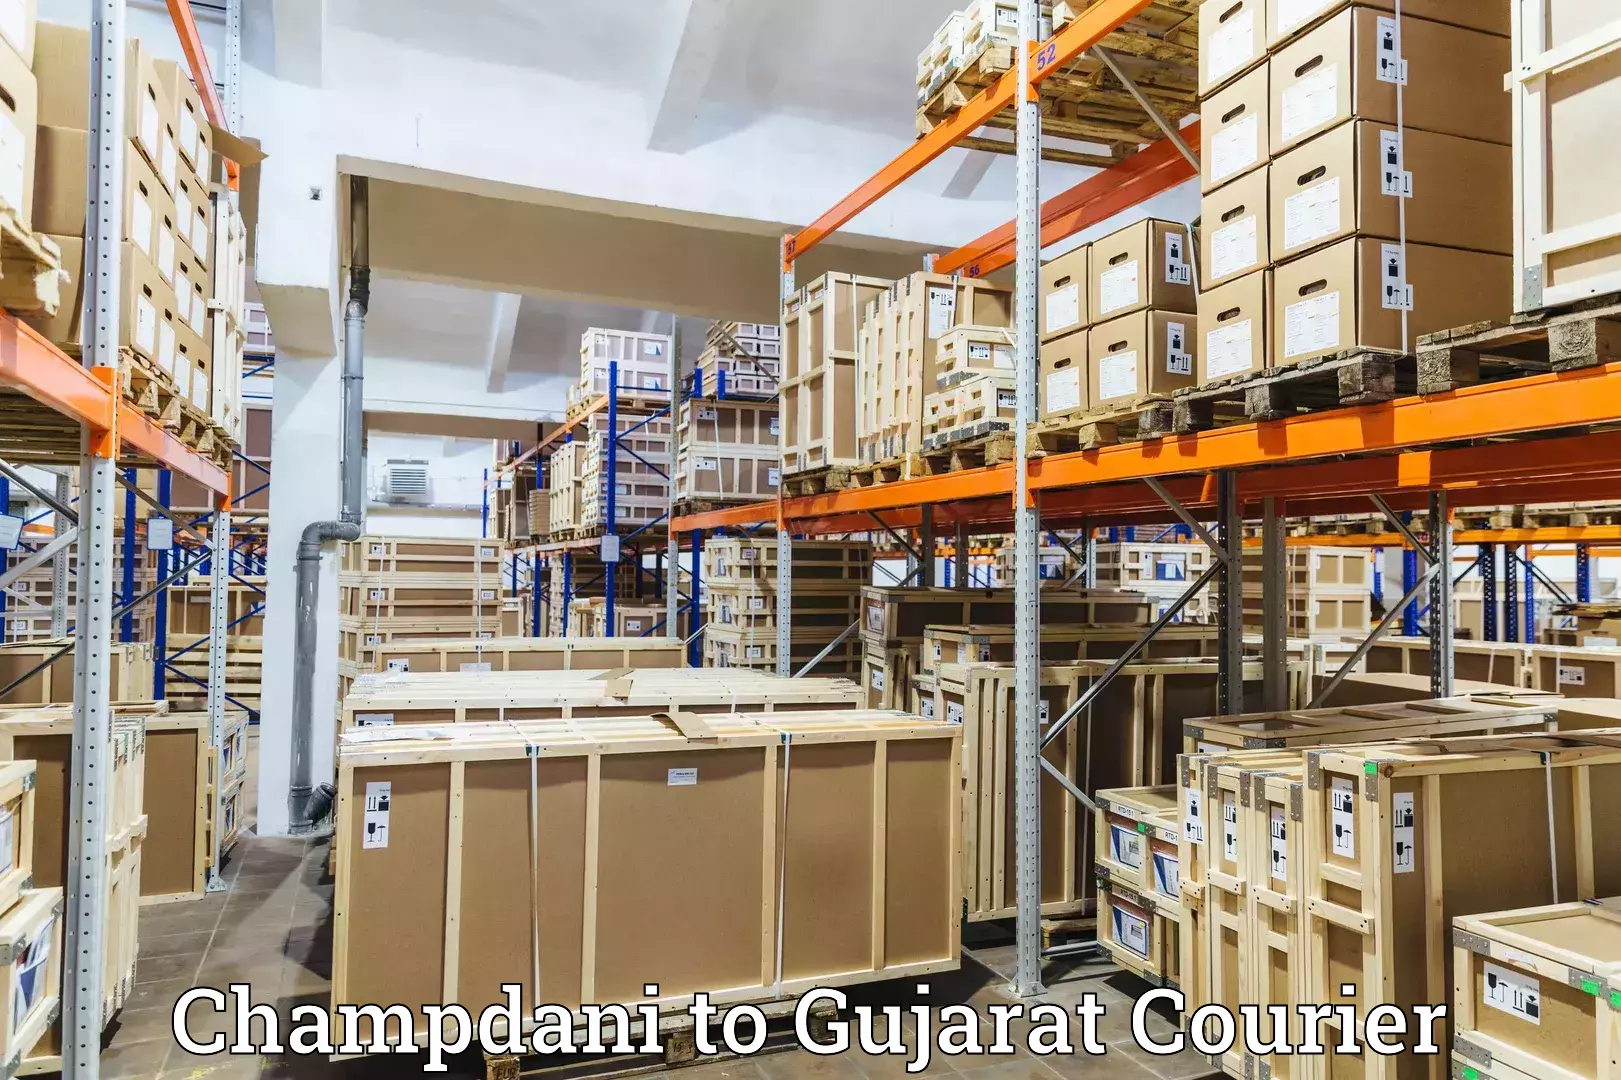 Local delivery service Champdani to Gujarat